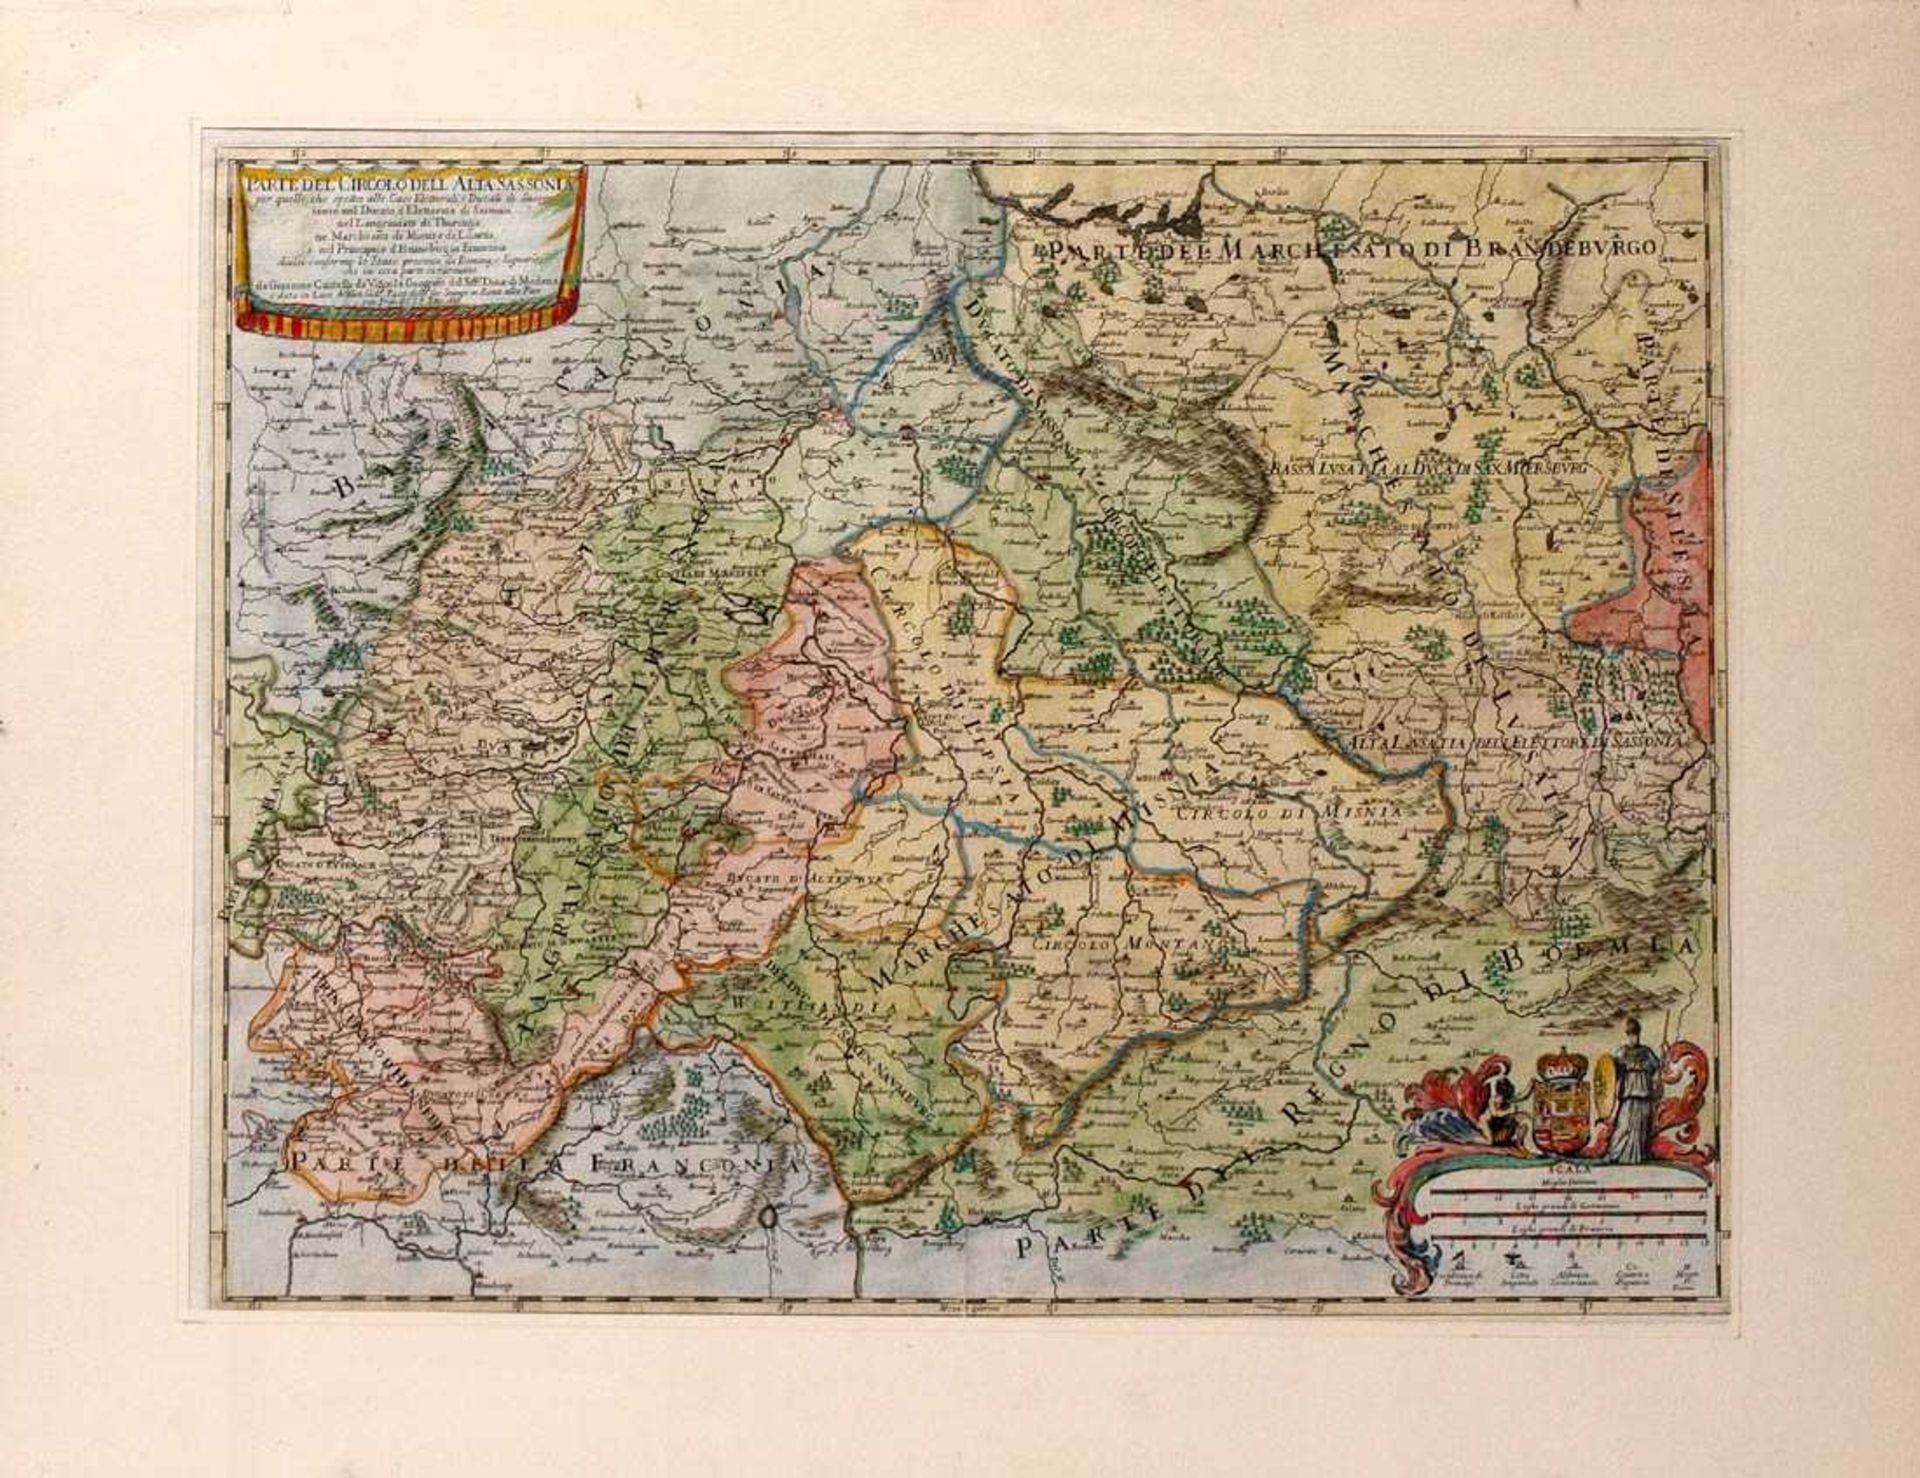 Cantelli, GiacomoLandkarte von Sachsen und Thüringen mit umgebenden Gebieten. Kupferstich,